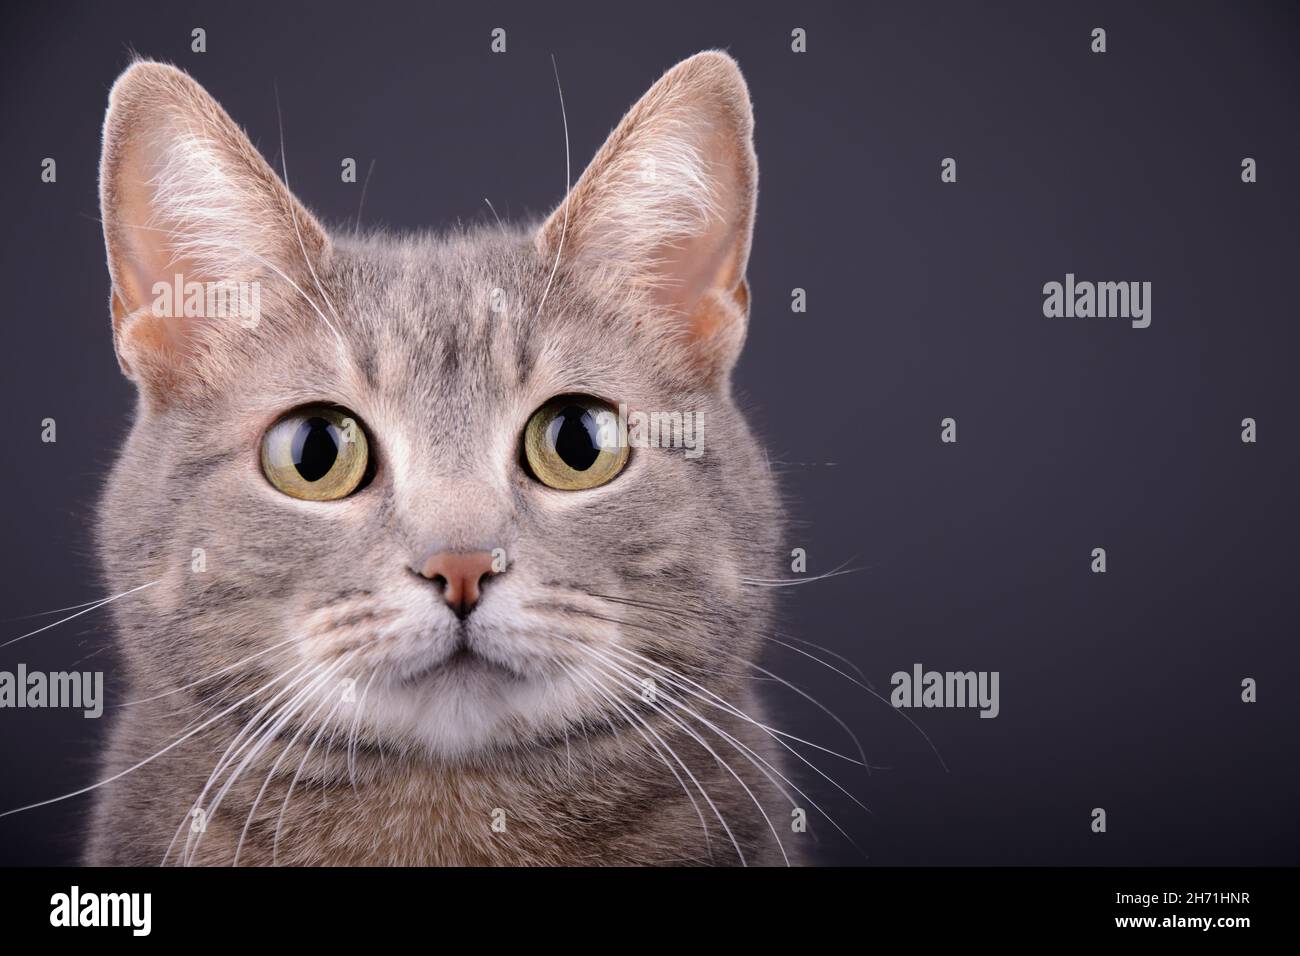 Primo piano del volto di un gatto tabby blu, su sfondo grigio scuro Foto Stock